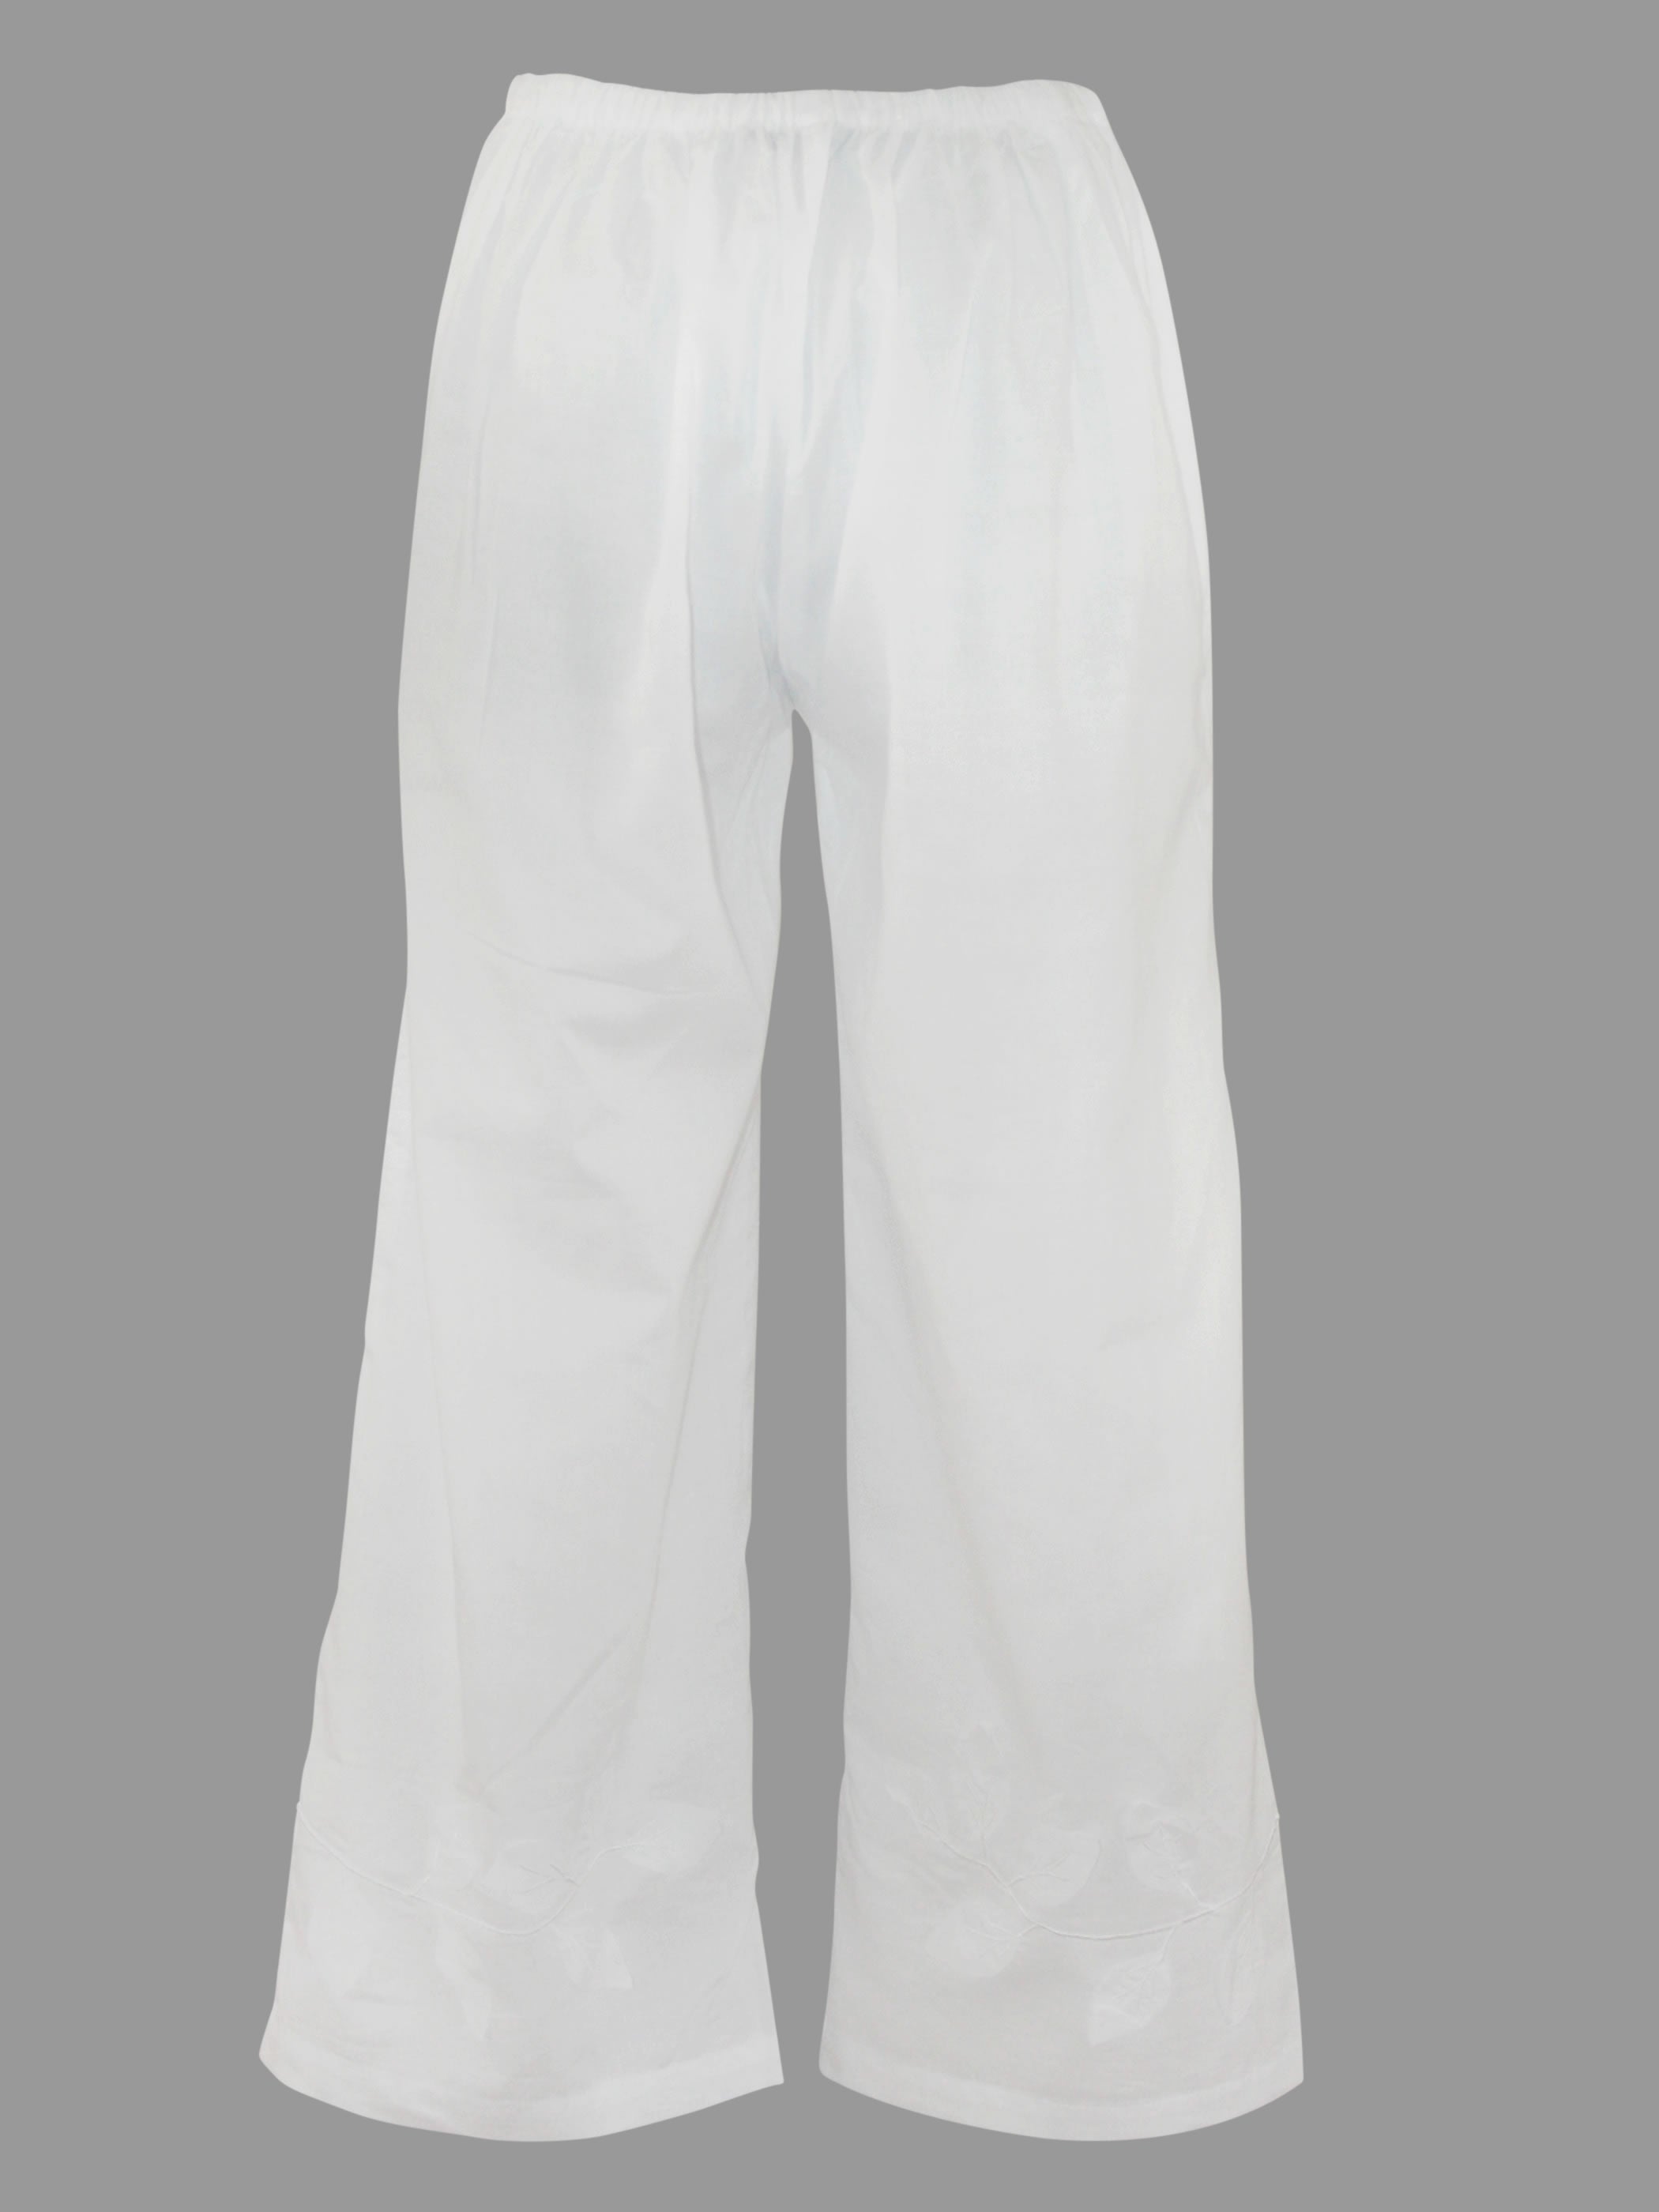 Lani White Cotton Yoga Pants